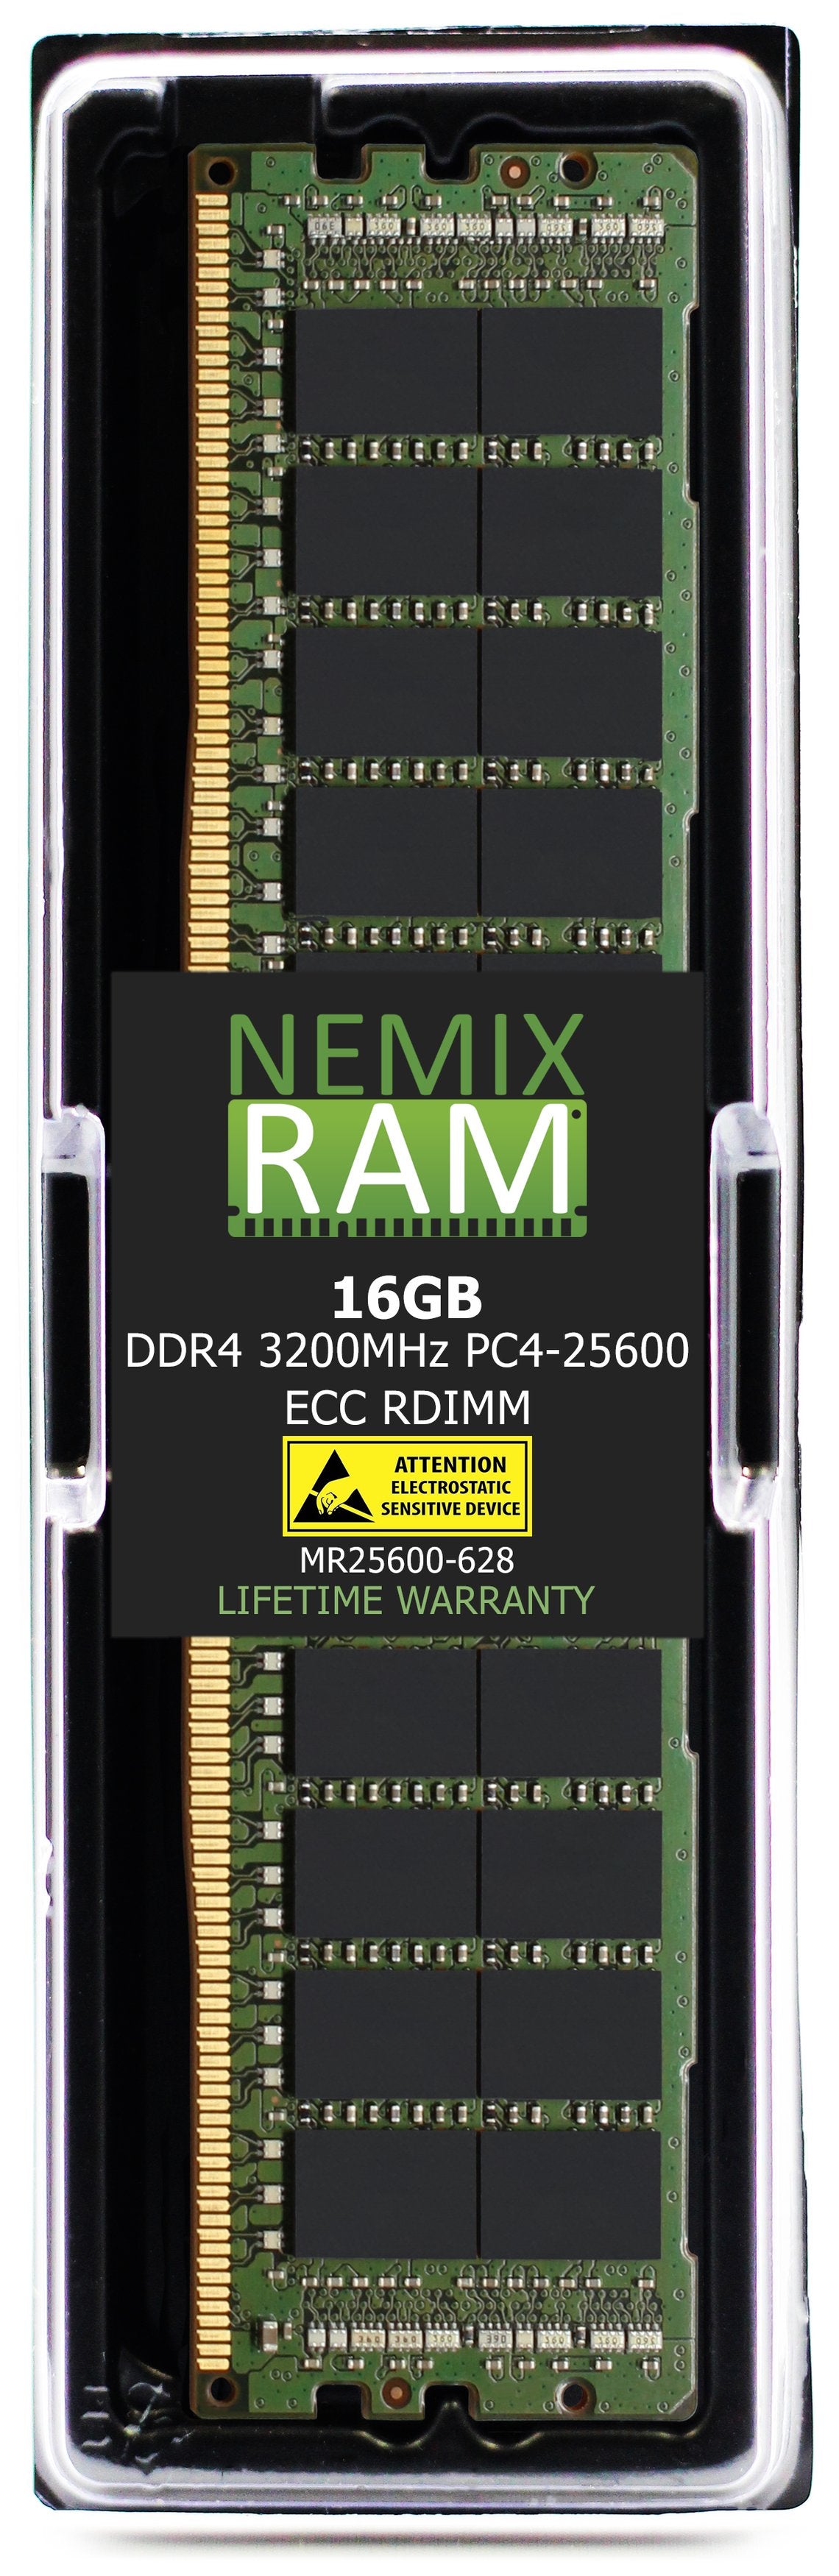 16GB DDR4 3200MHZ PC4-25600 RDIMM Compatible with Supermicro MEM-DR416L-CL01-ER32